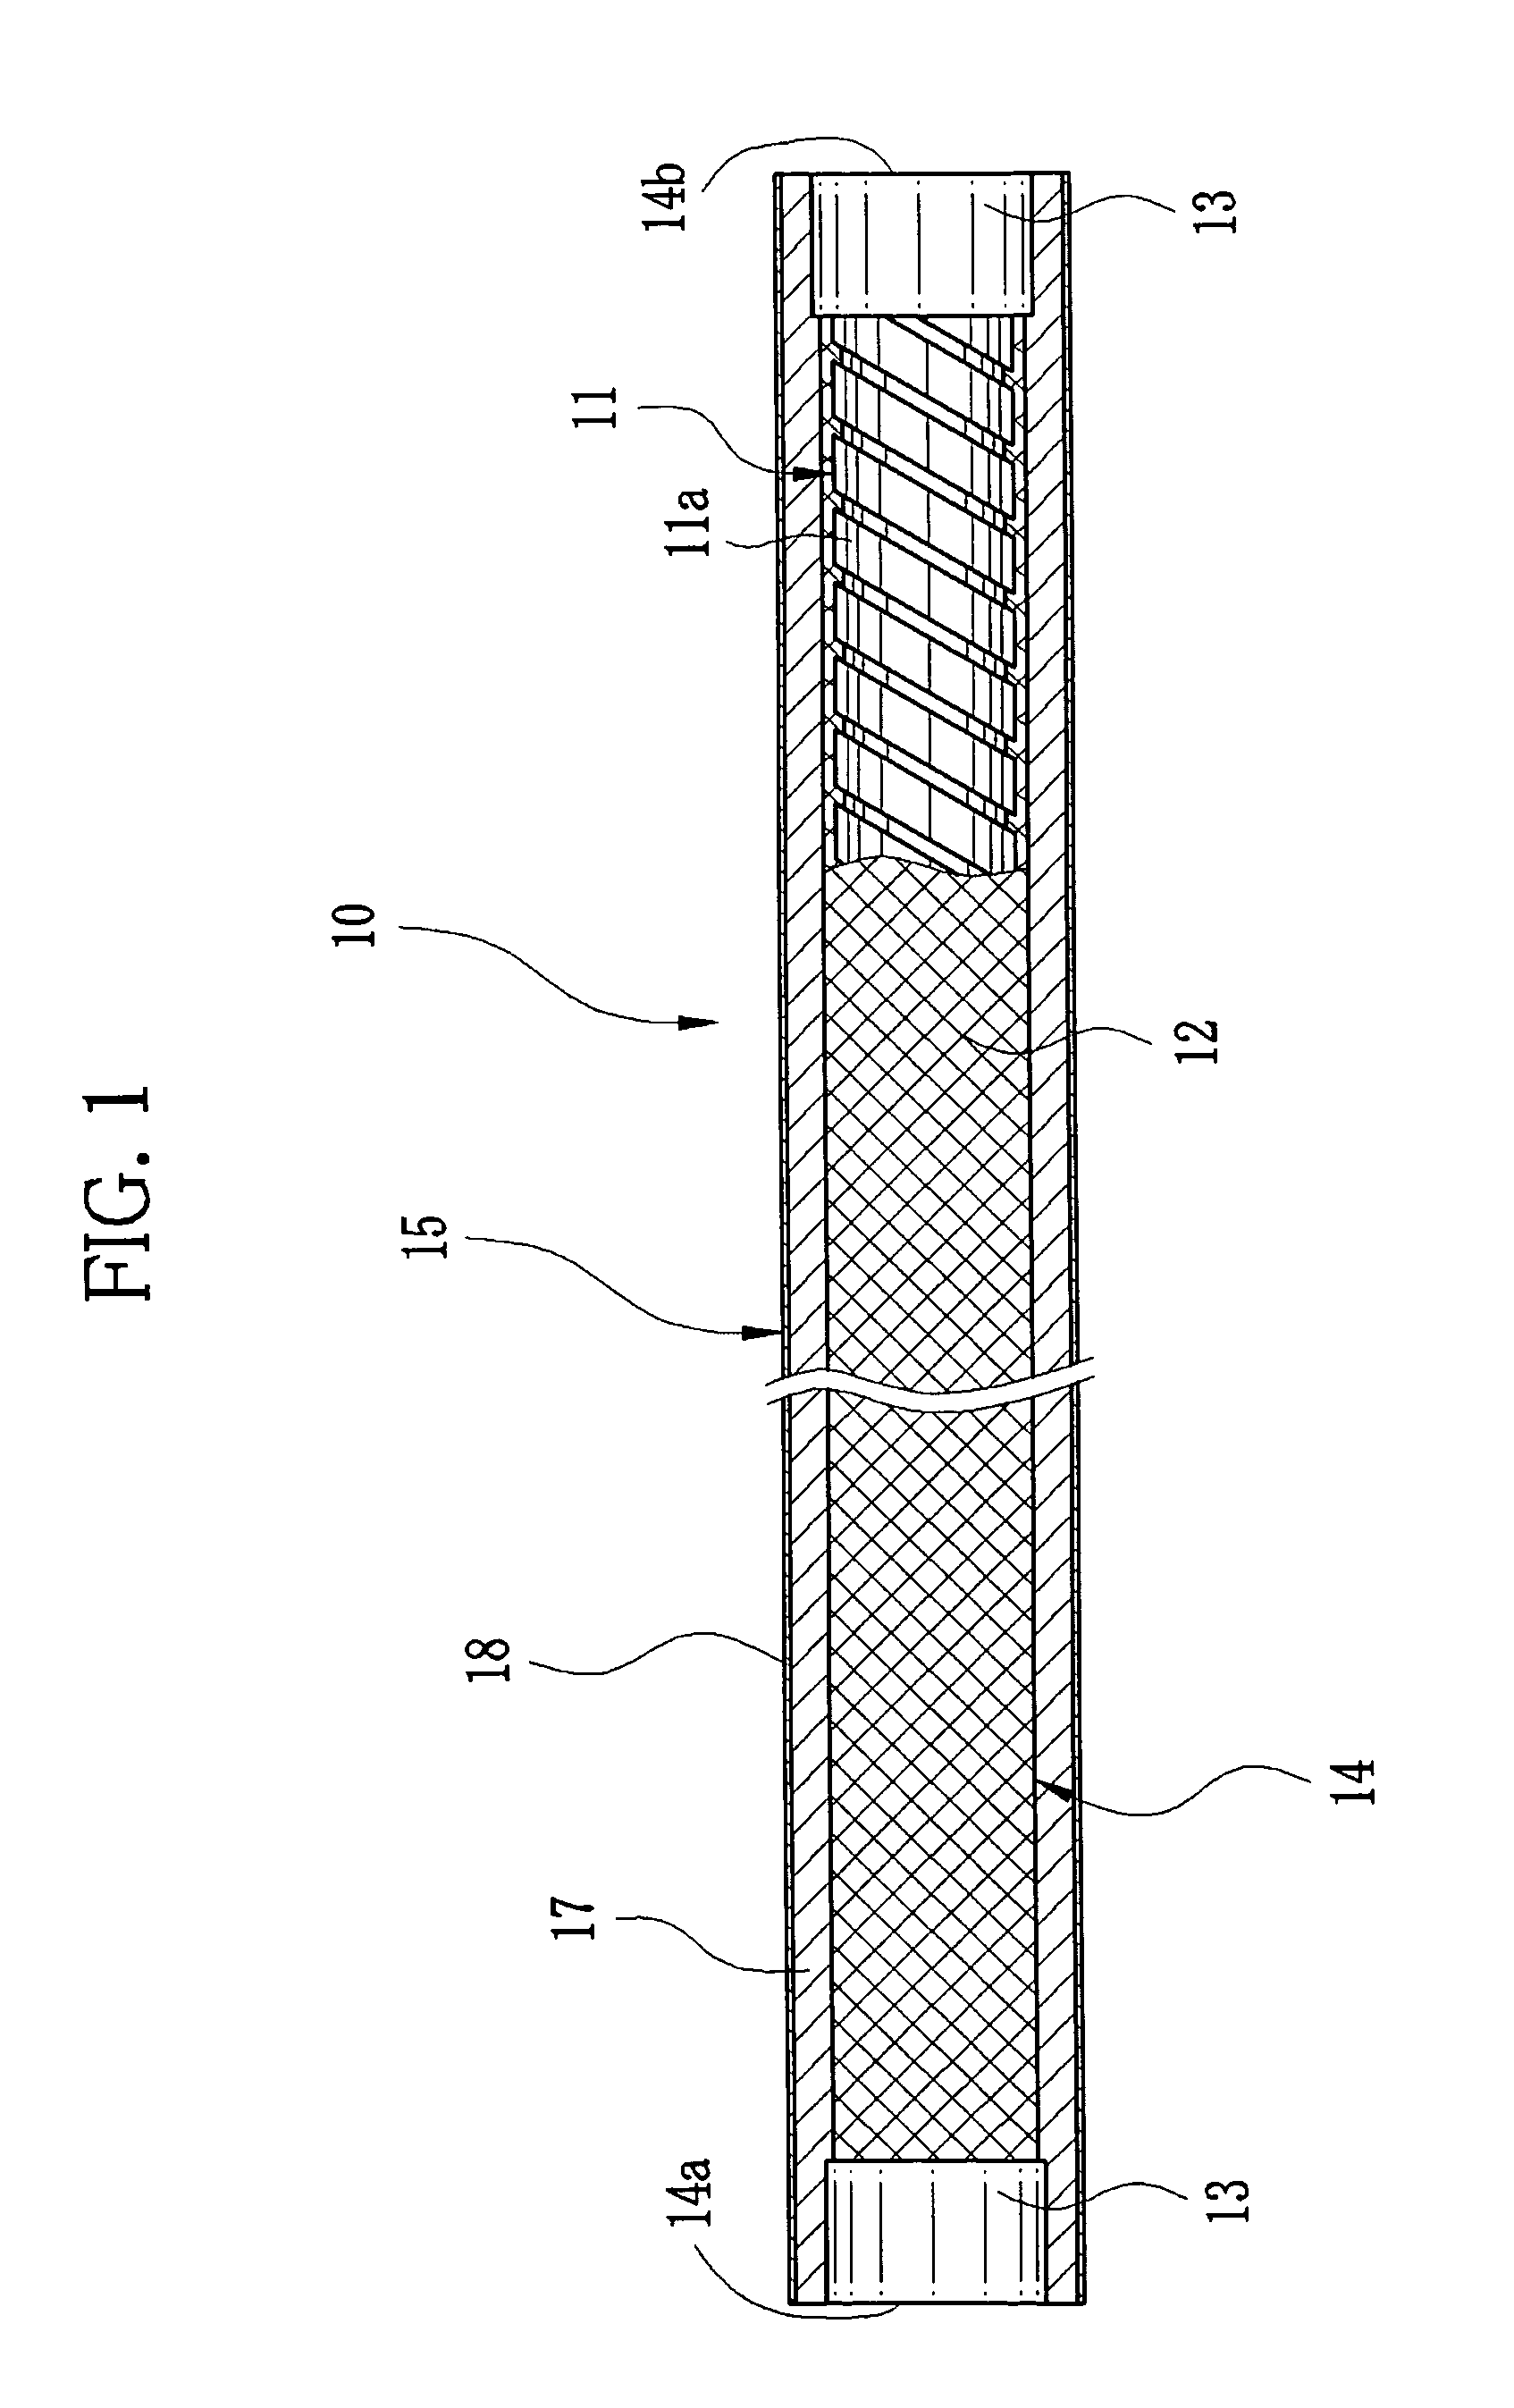 Method for repairing flexible tube